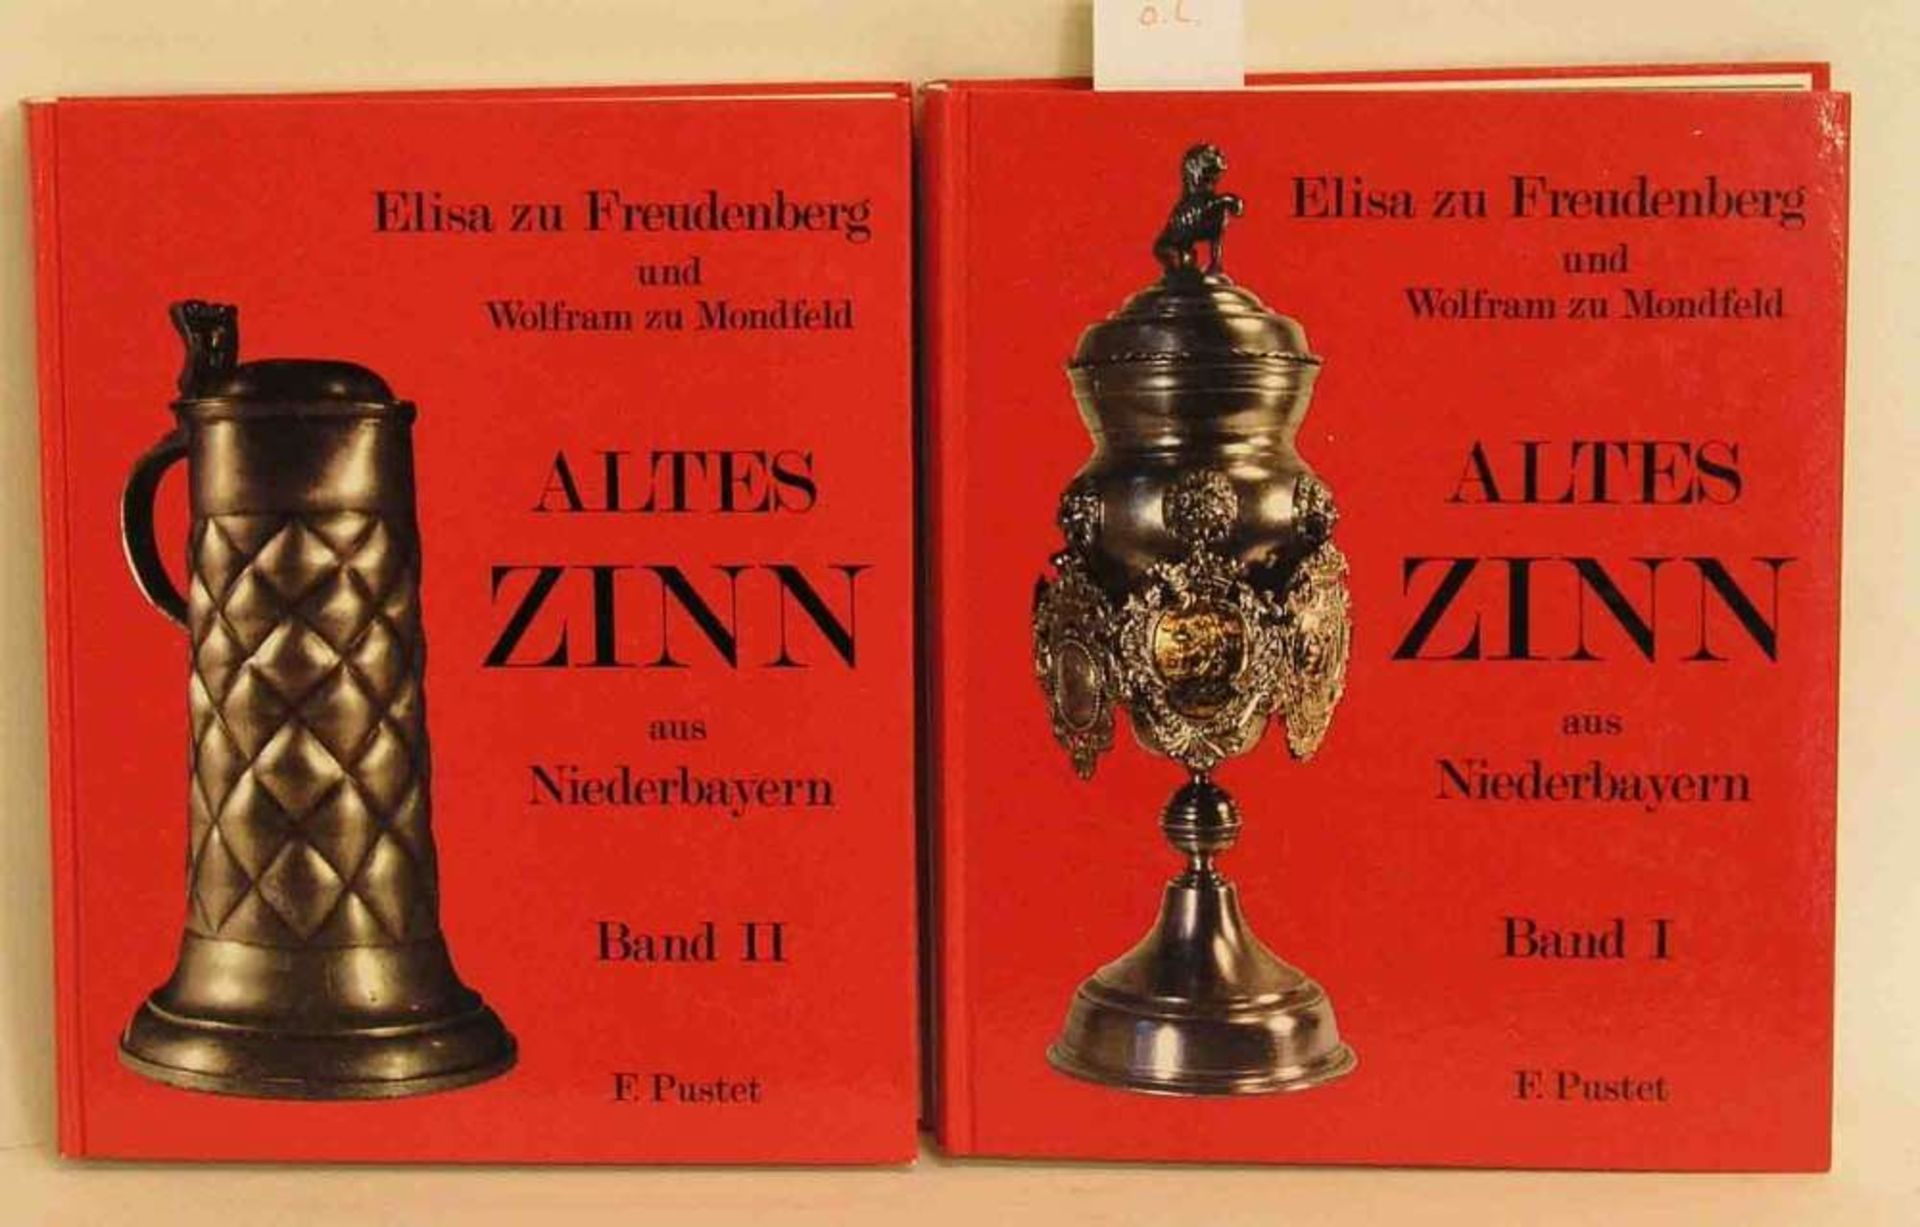 Goldschmiedekunst, zwei Bücher. Dabei zu Freudenberg, Elisa (u.a.): "Altes Zinn aus Niederbayern".